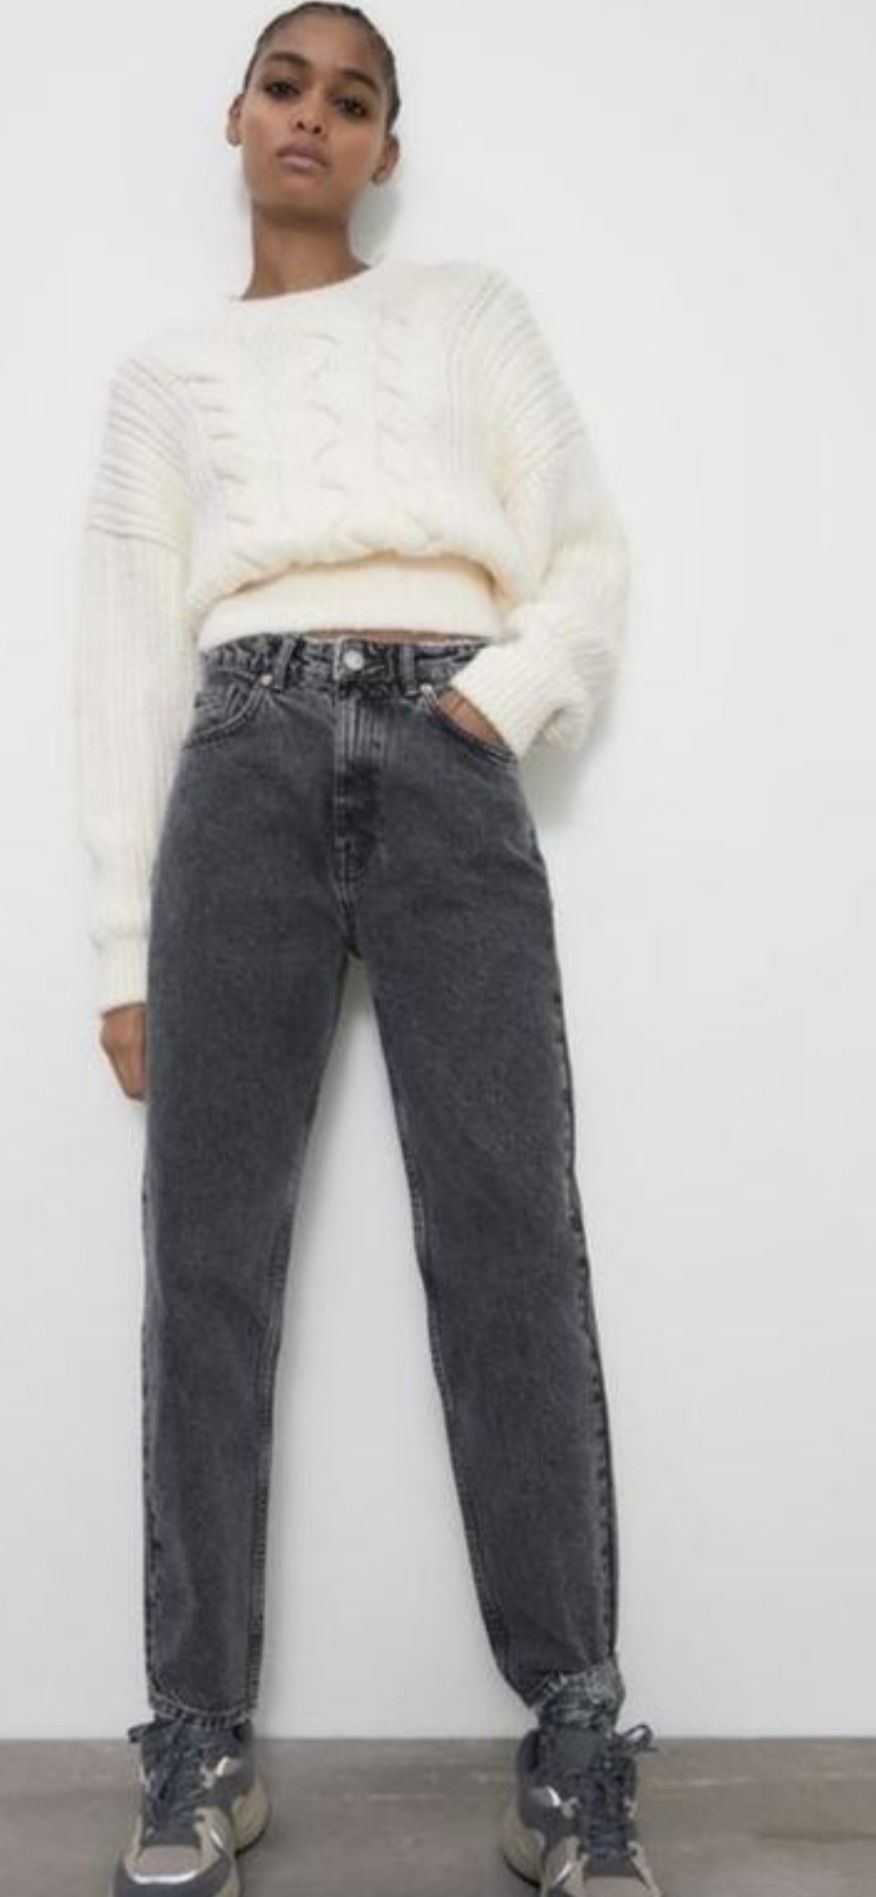 Продам джинсы Zara mom fit,eur42(us10)в красивом сером цвете